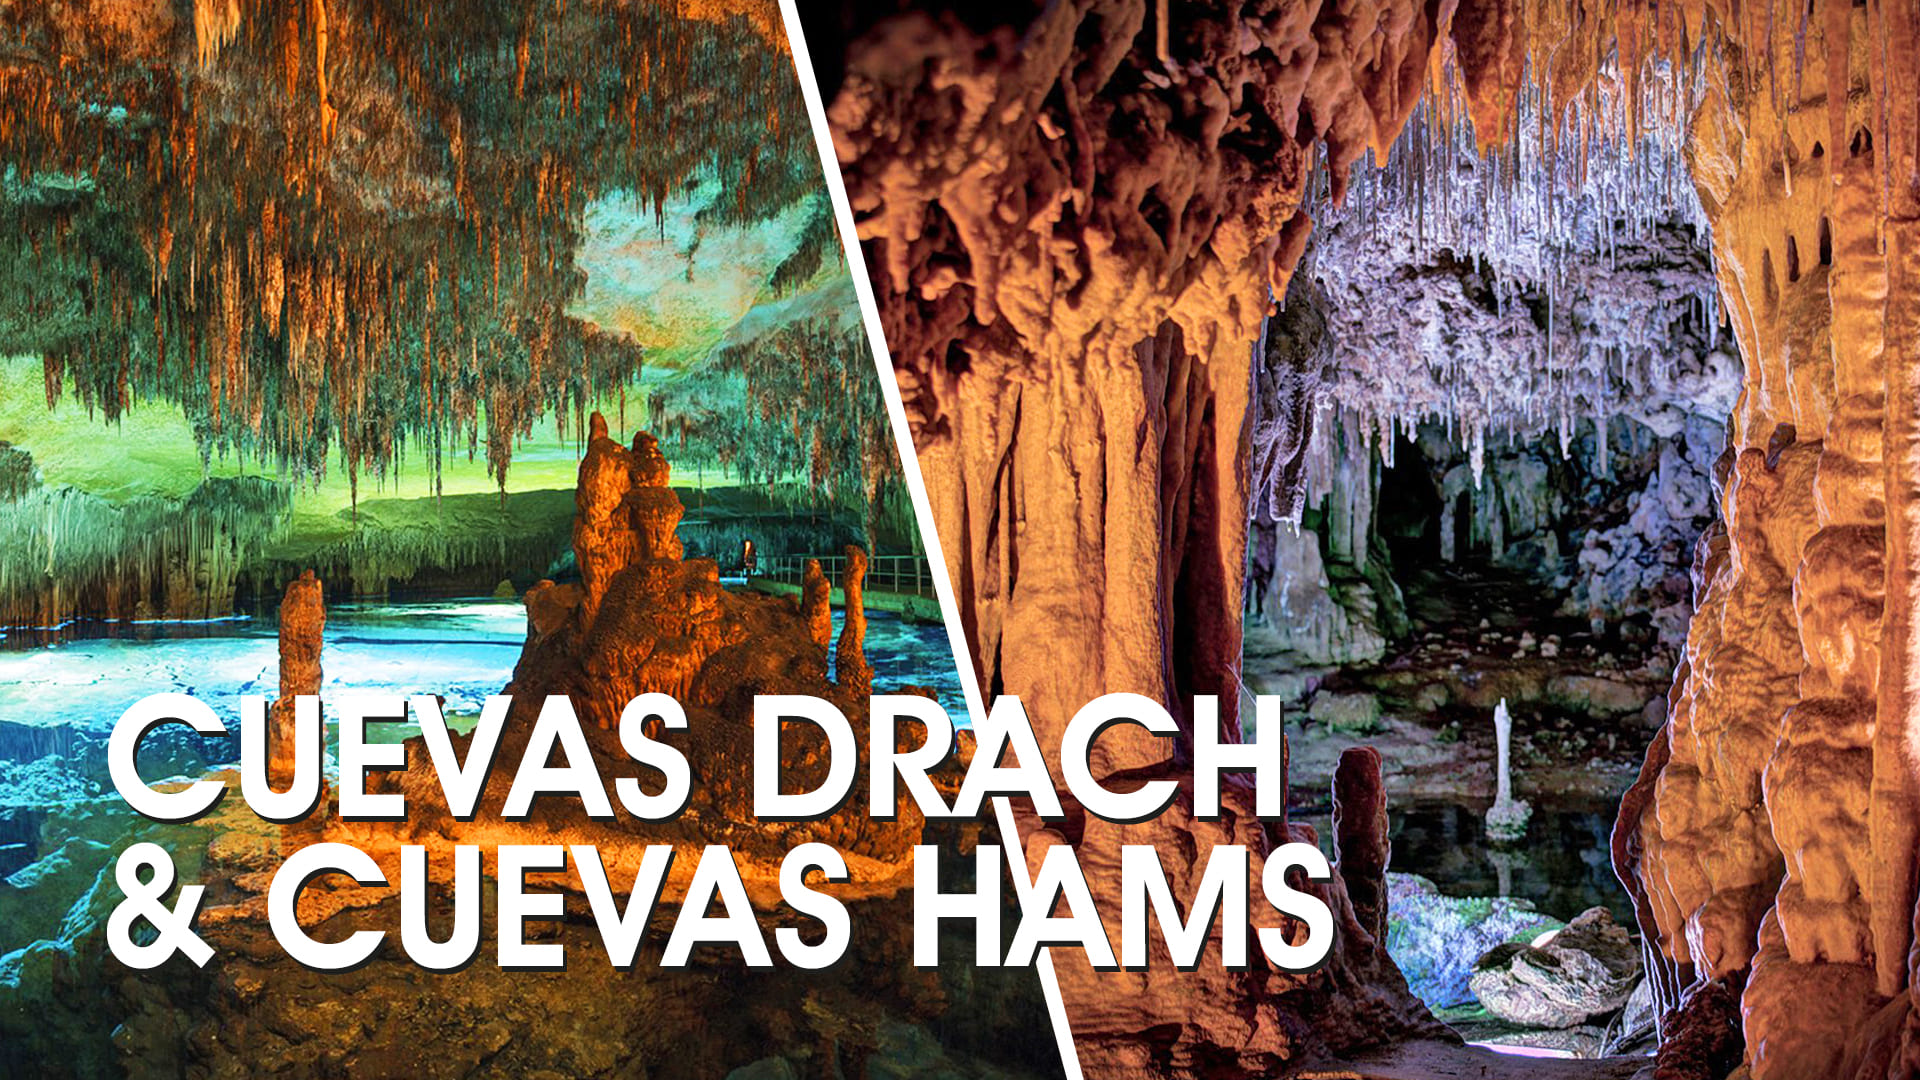 Cuevas Drach & Cuevas Hams dia completo